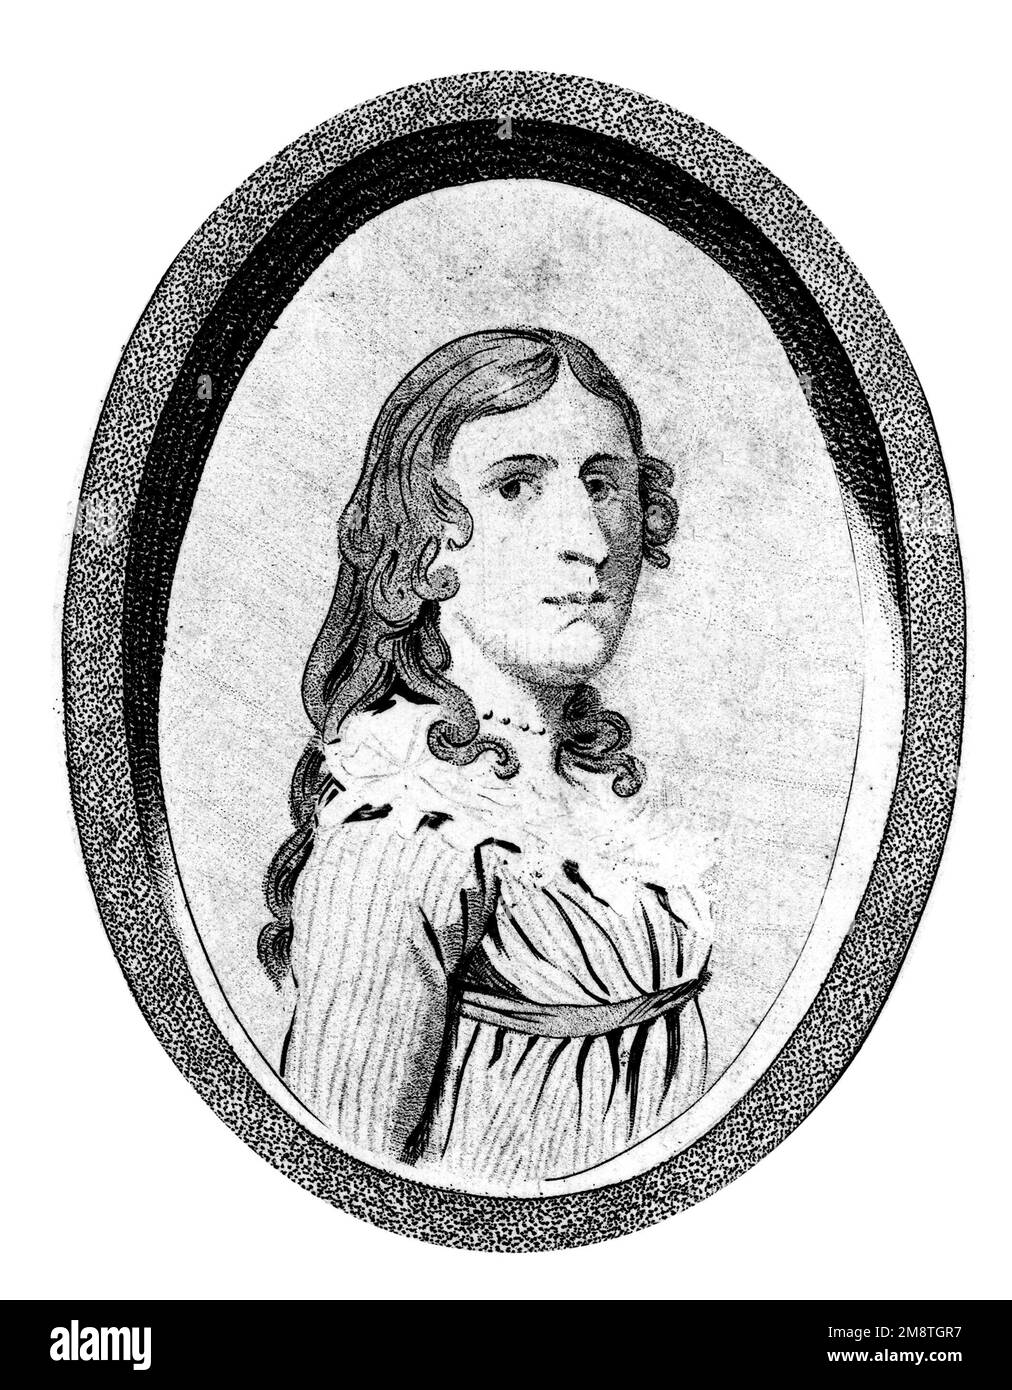 Portrait de la frontispice d'un livre sur la vie de Deborah Sampson. Deborah Sampson Gannet (1760-1827) était une femme qui s'est déguisée comme un homme, Robert Shirtliff, afin de se joindre à l'Armée continentale. Banque D'Images